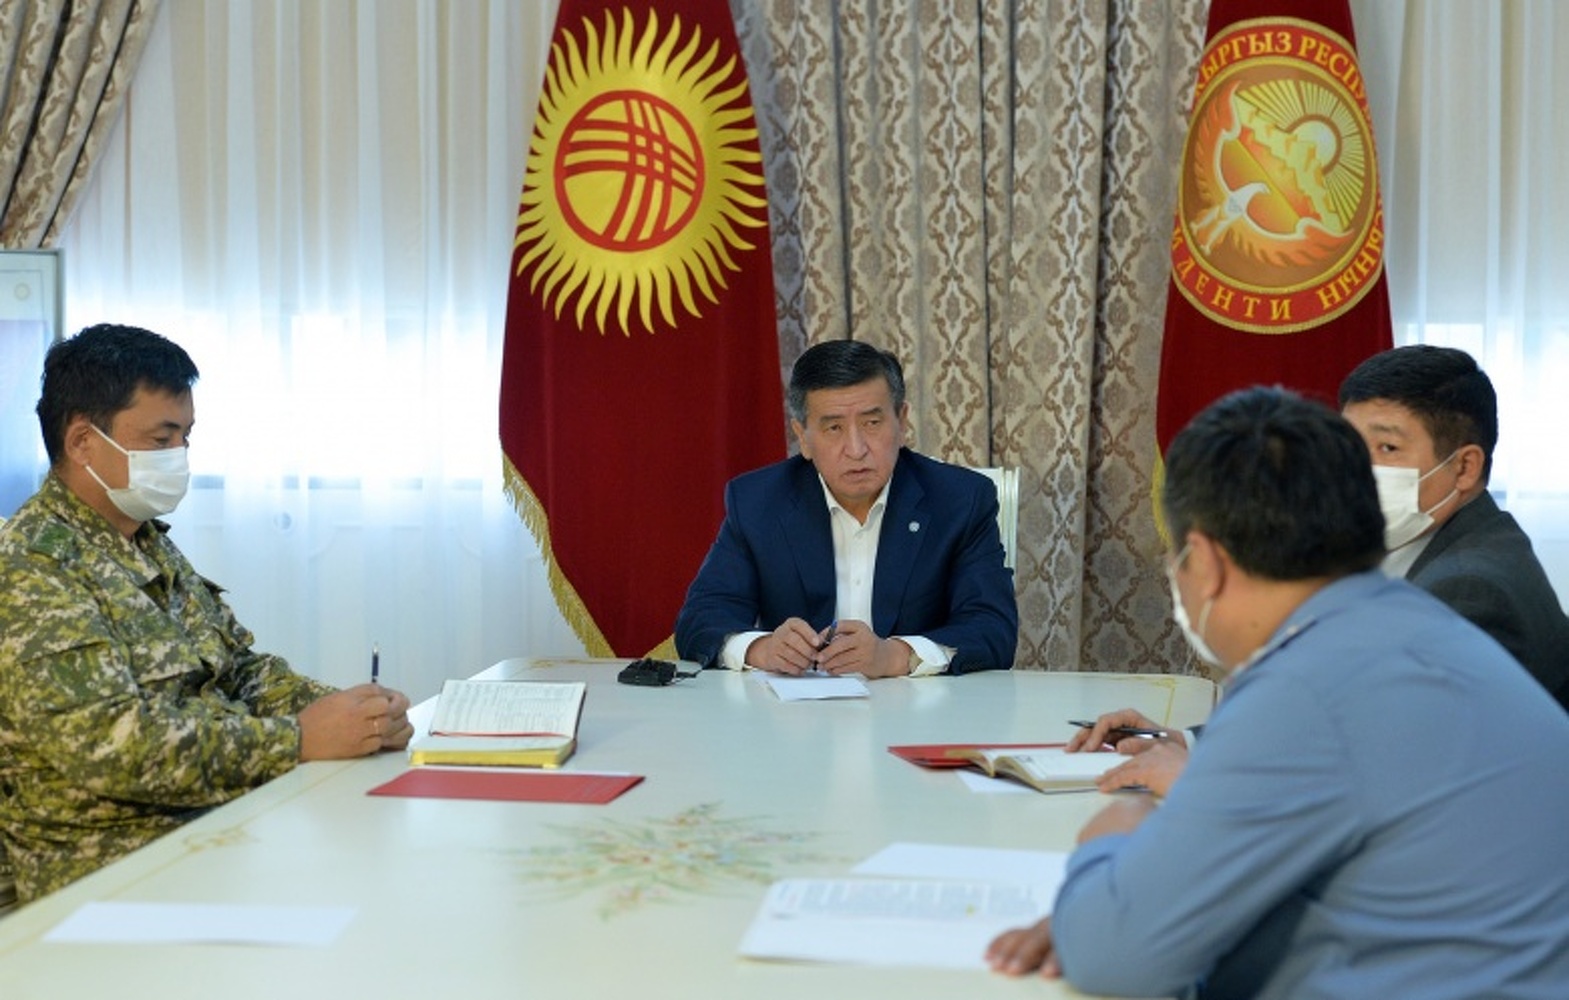 Жээнбеков повторно ввел режим чрезвычайного положения в Бишкеке — Today.kg